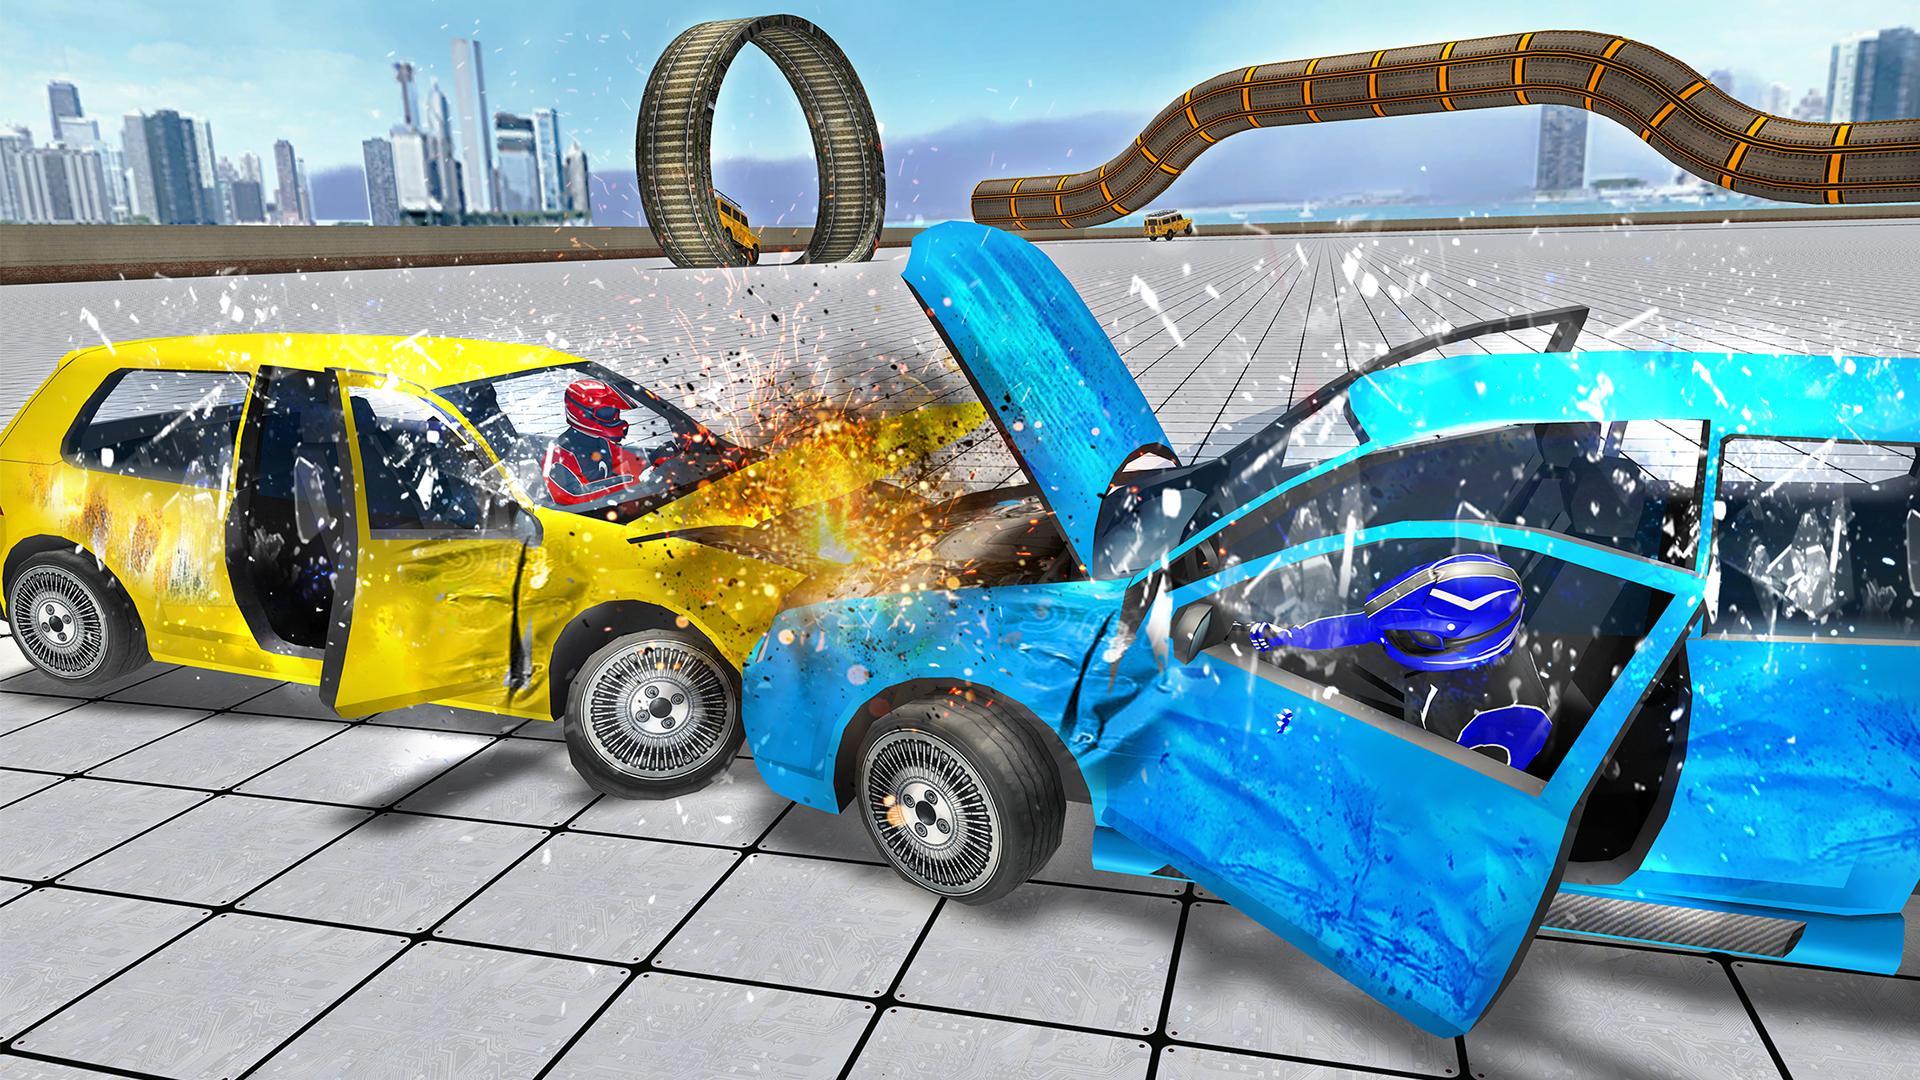 Тест машин 7. Car crash игра. Crash Test игра. Машины на кар краш. Моделирование столкновения автомобилей.